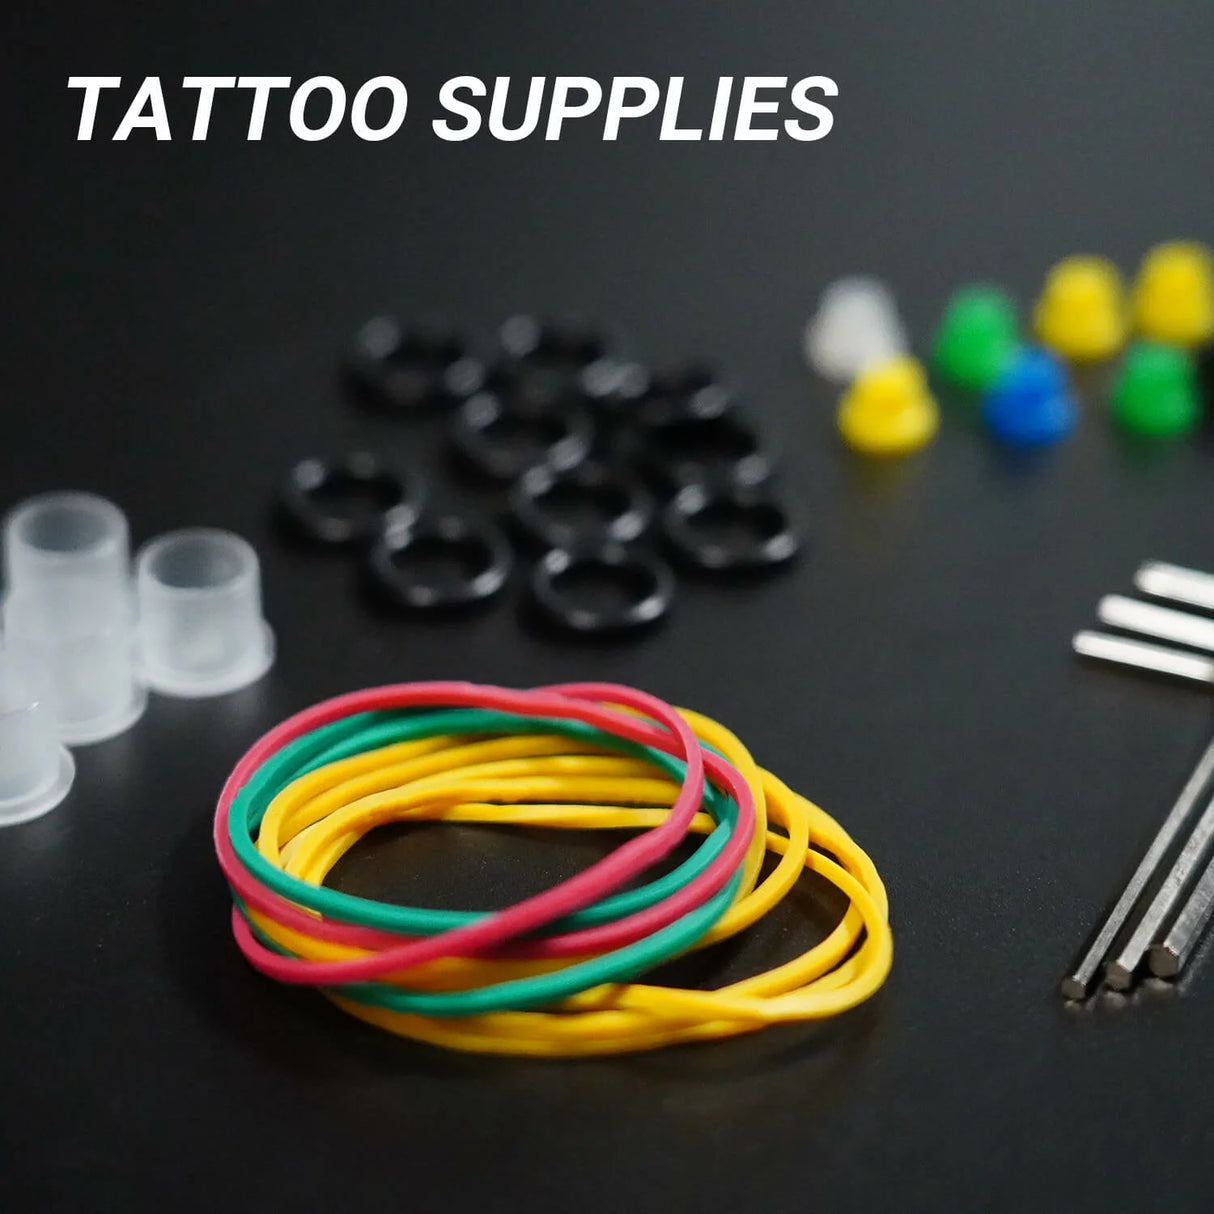 tattoo supplies